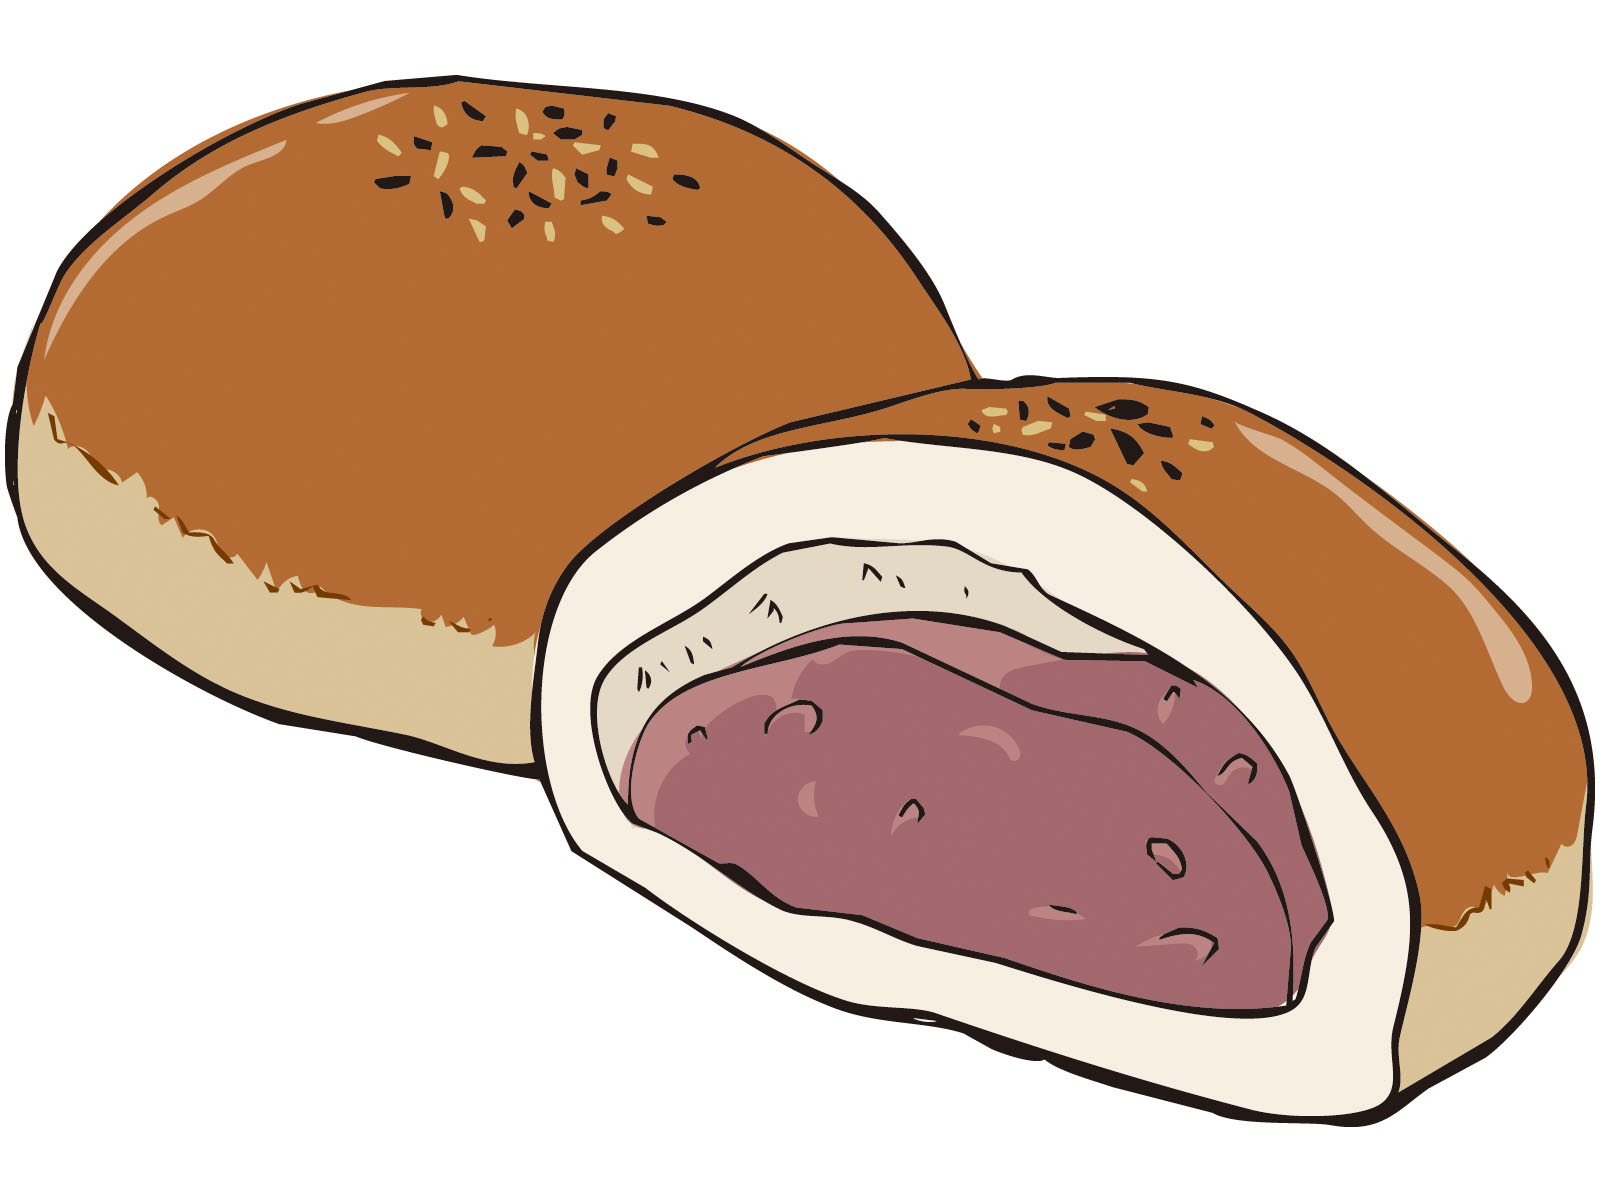 山崎製パン(ヤマザキ)の菓子パン25種類の糖質を比べてみた